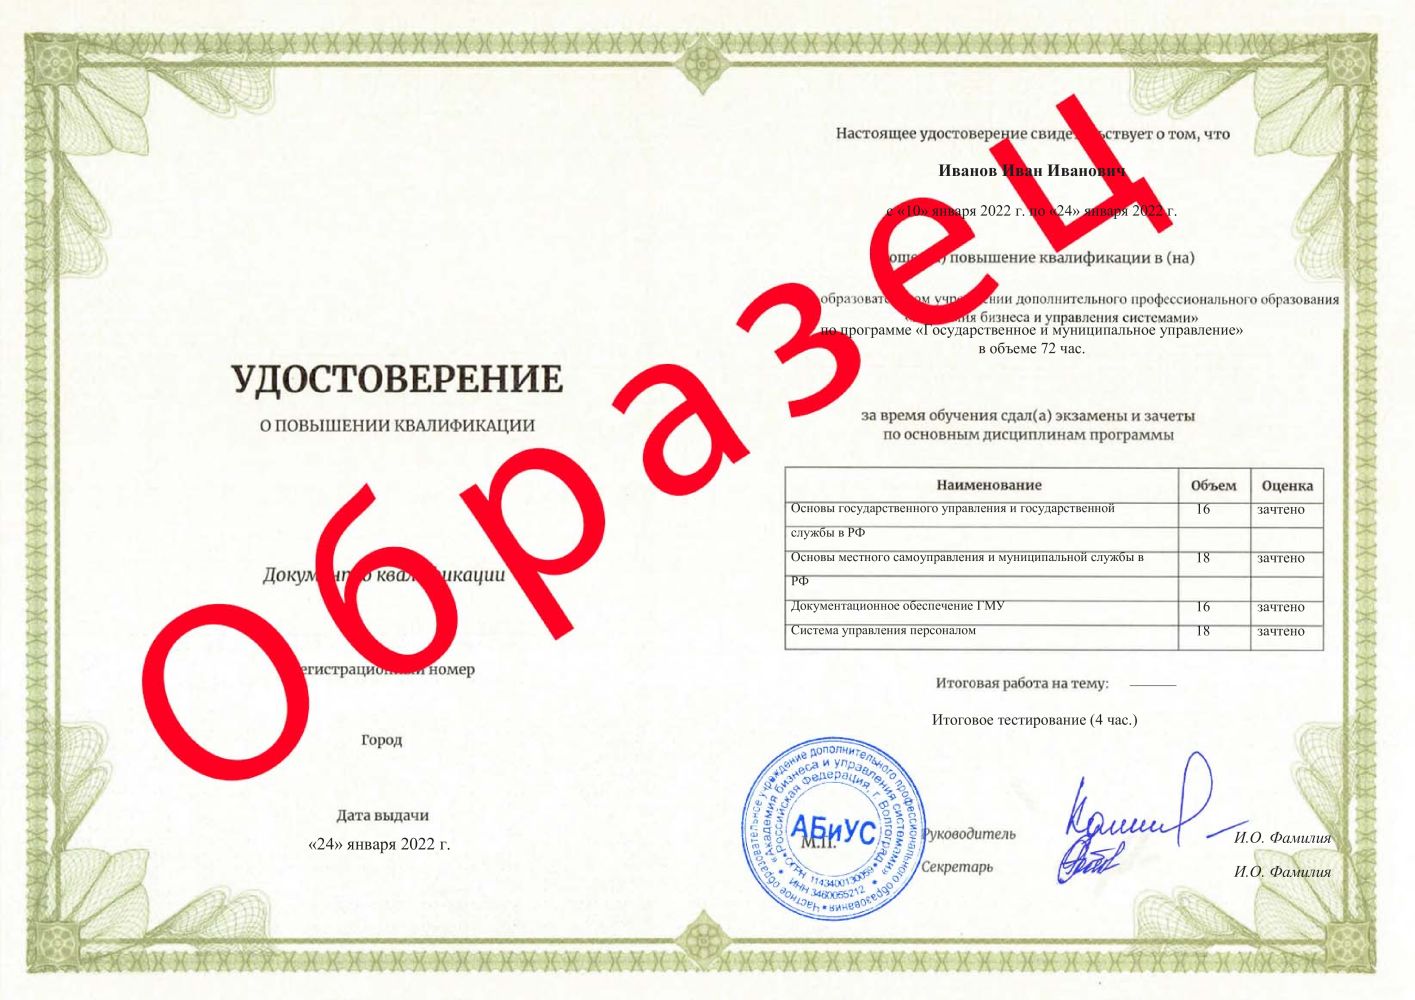 Удостоверение Государственное и муниципальное управление 72 часа 4200 руб.